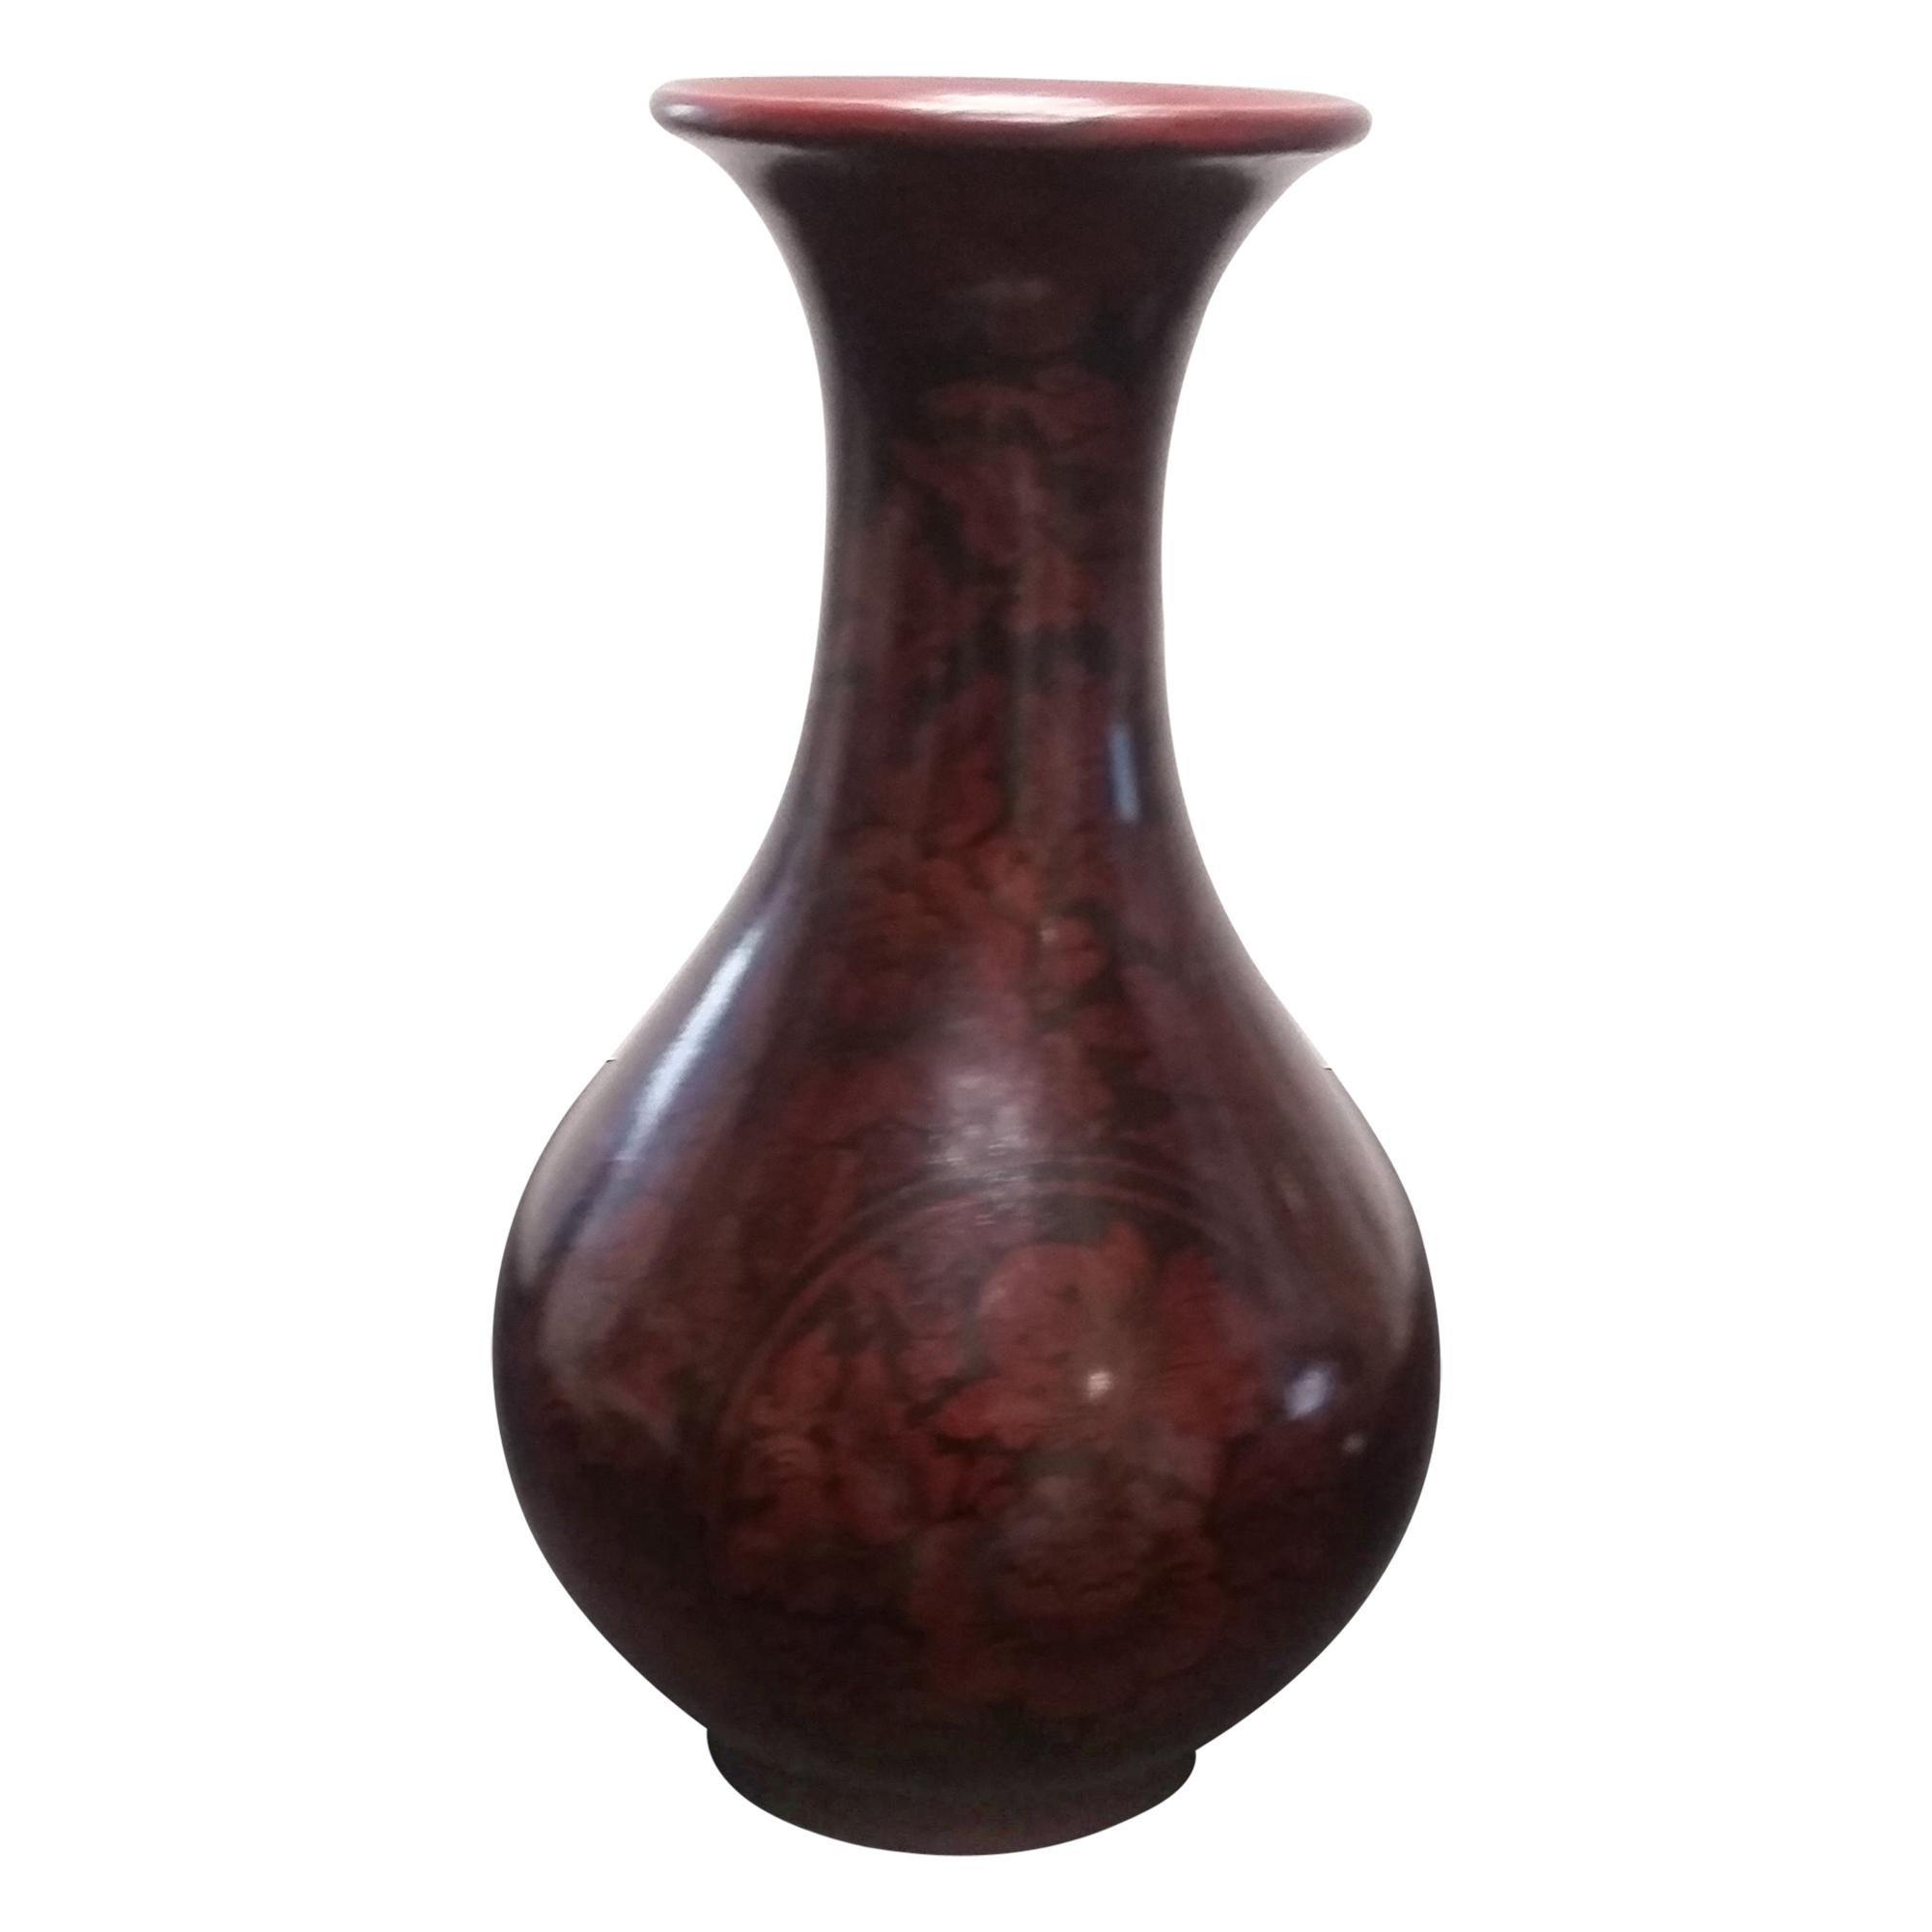 19th century antique Lacquer Vase Asian floral design